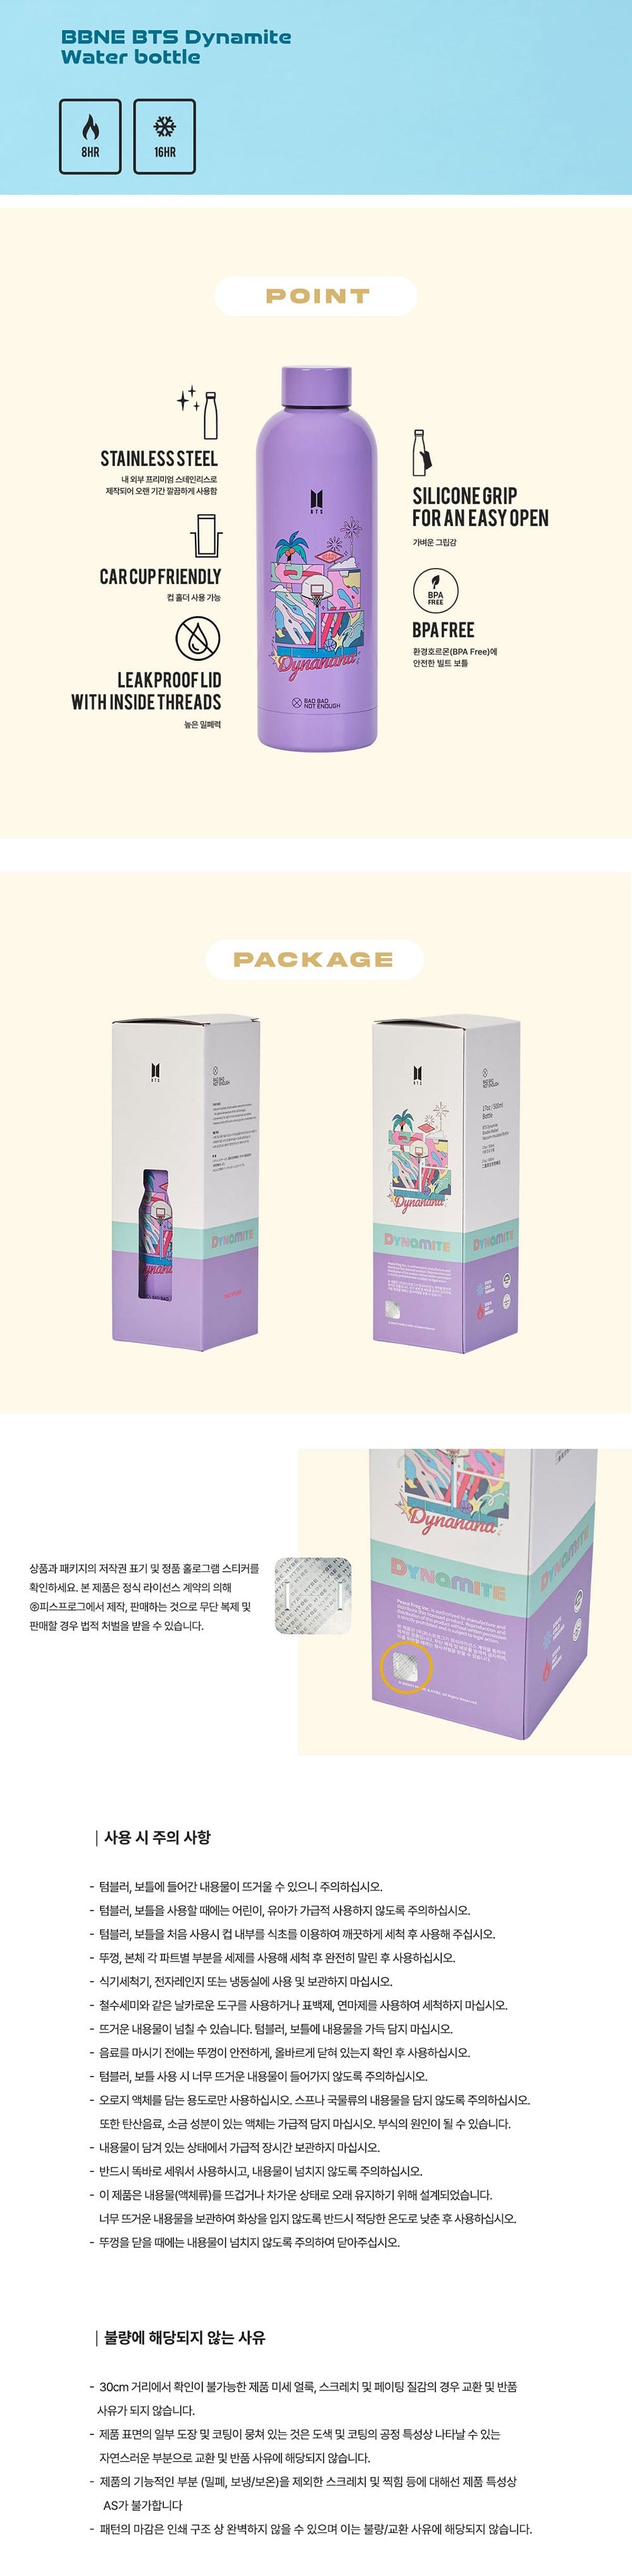 BTS - BBNE Dynamite Water Tumbler / Bottle Bottle / Pink